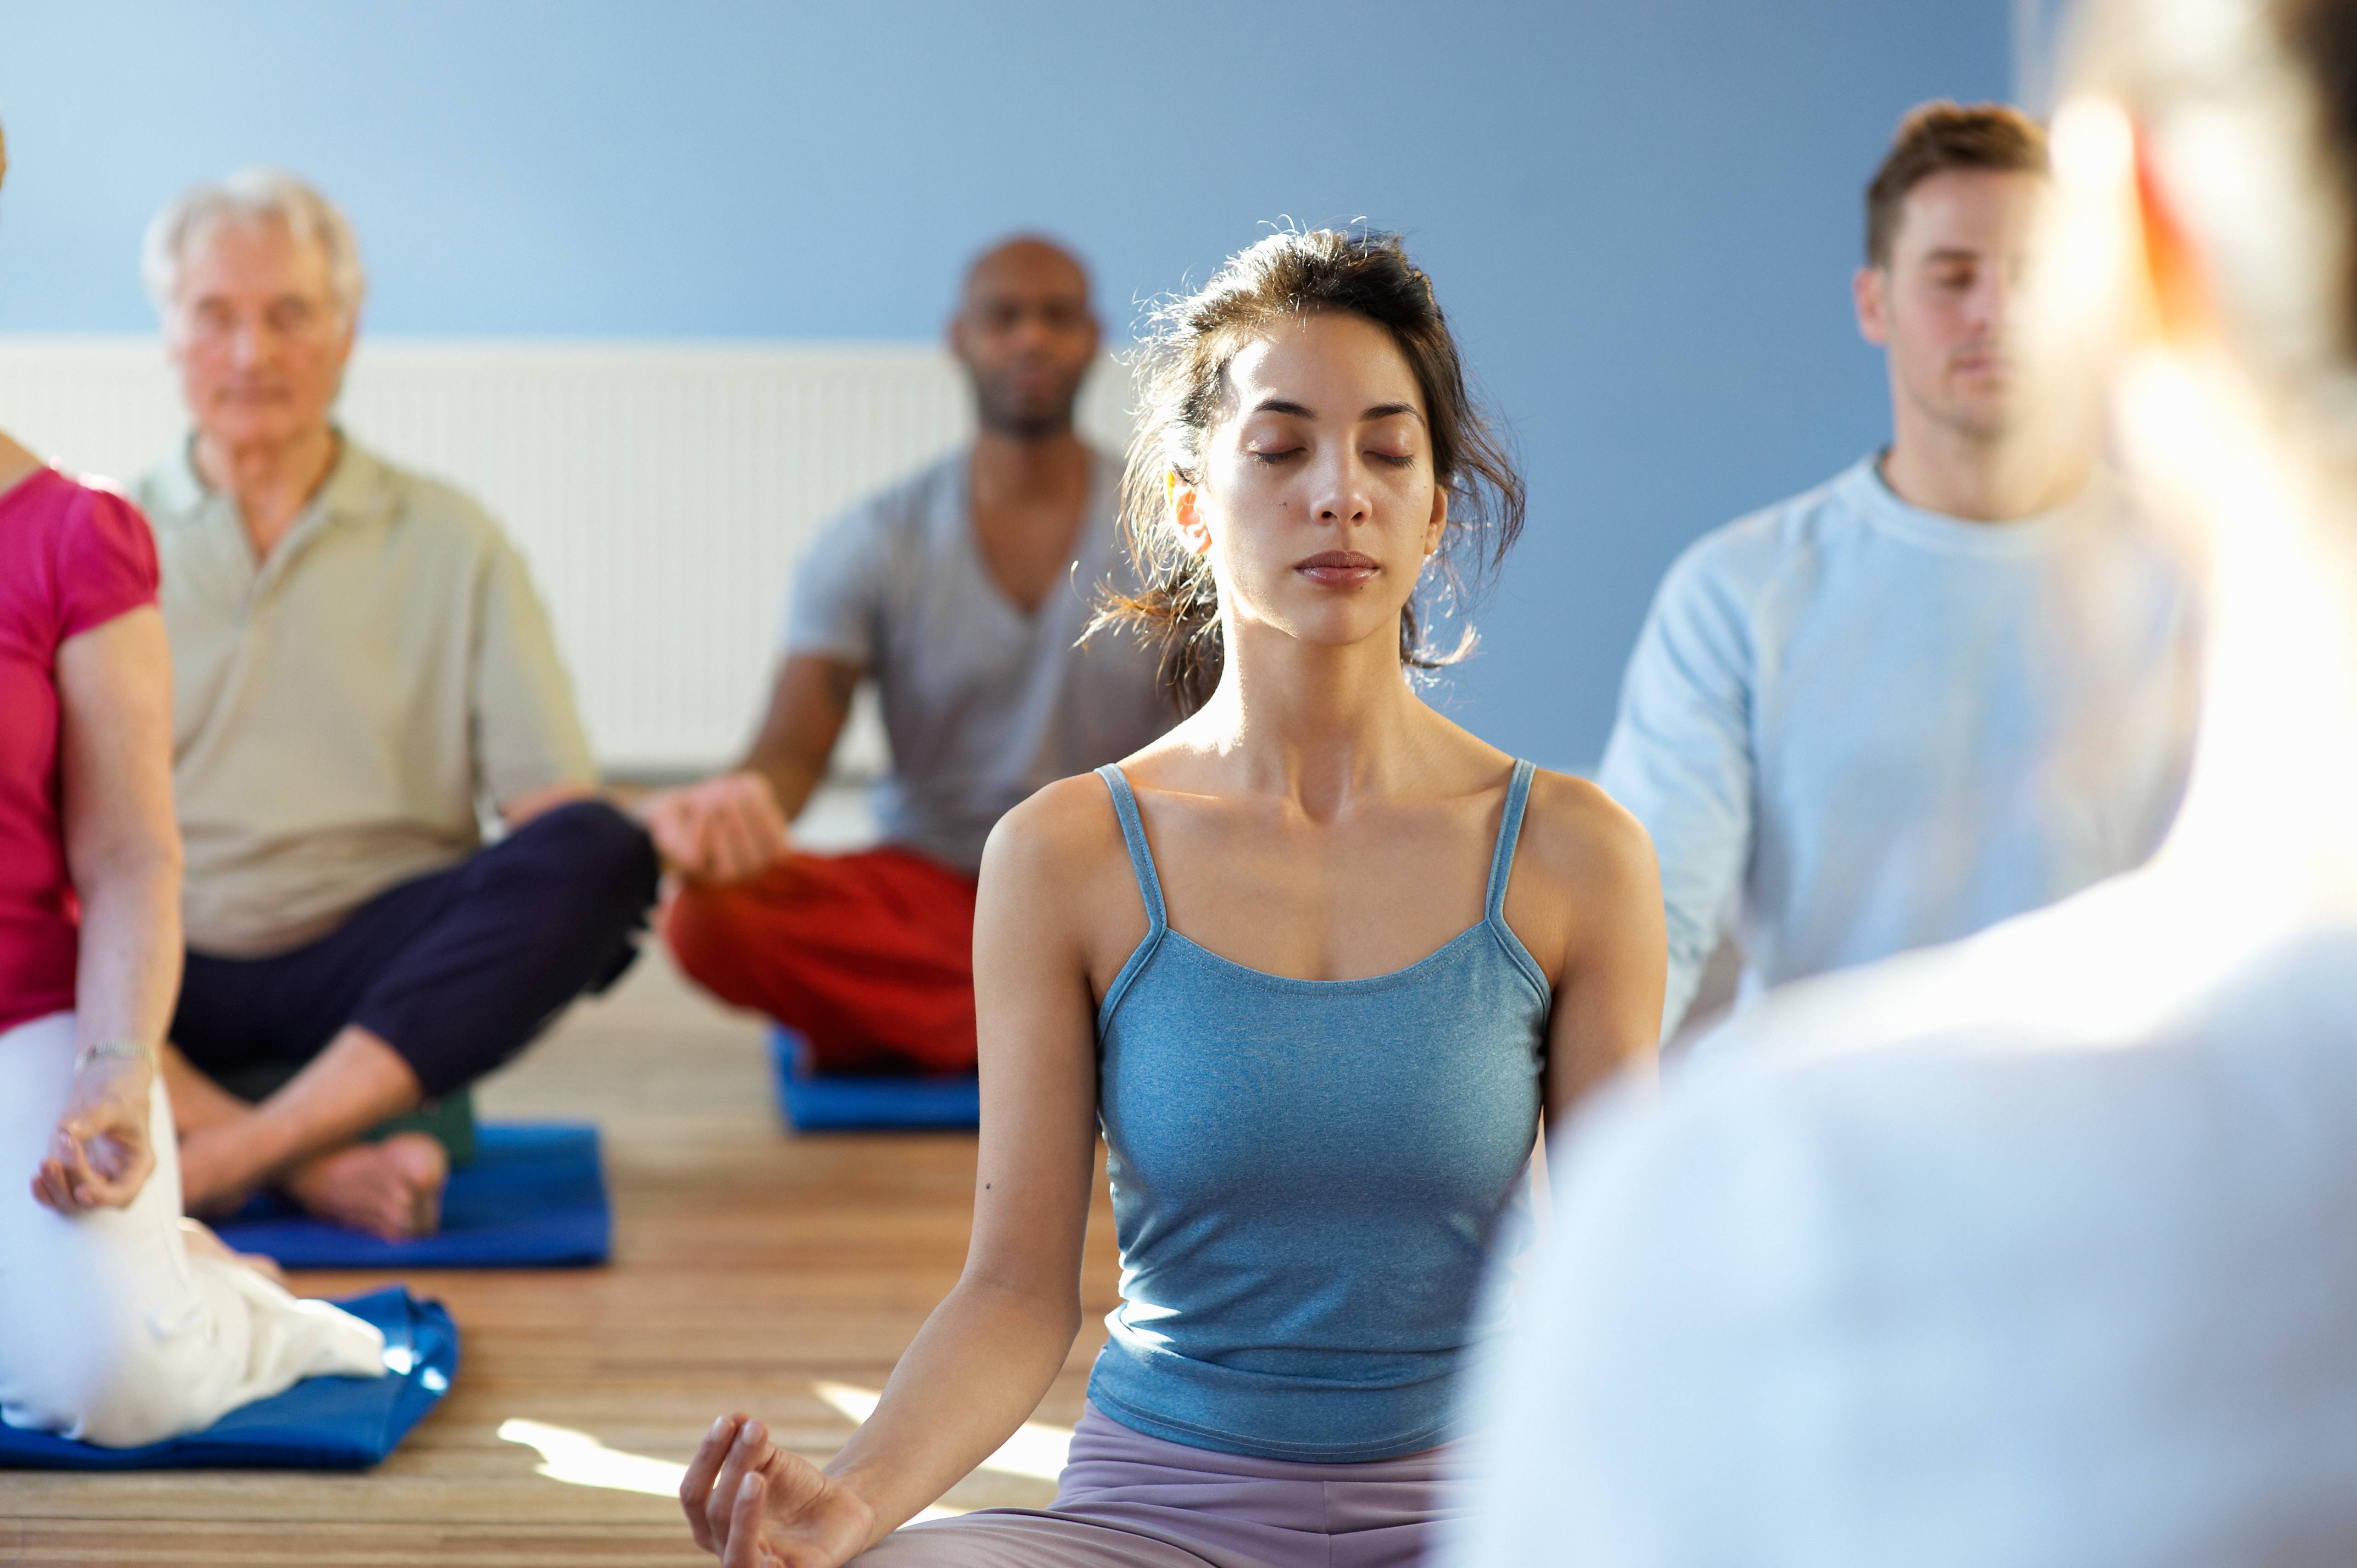 Медитация с изюмом – простой способ снять стресс за 2 минуты